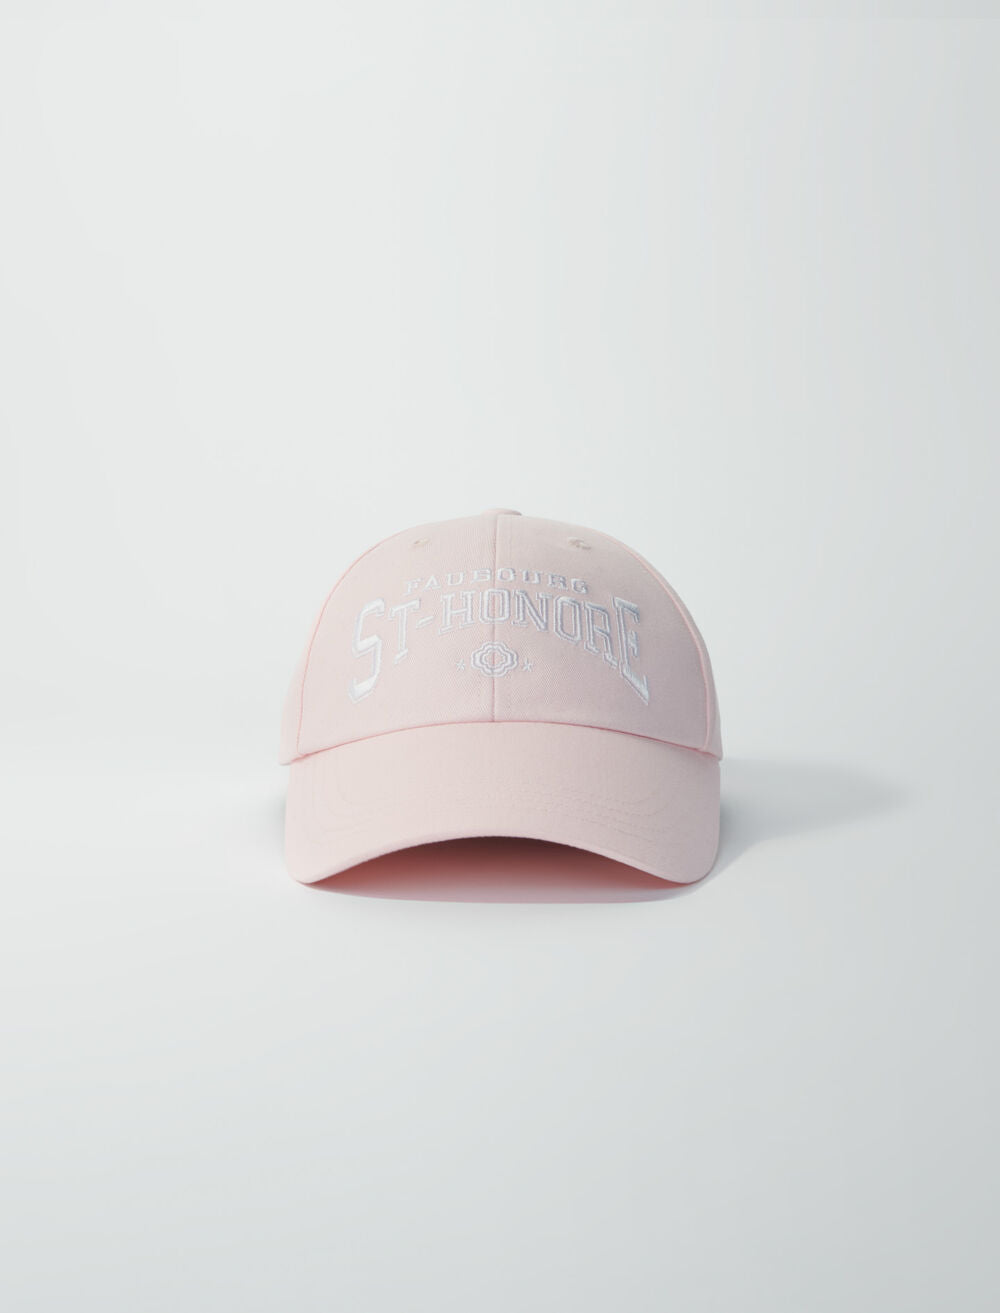 Pale Pink-featured-Saint Honoré cotton cap